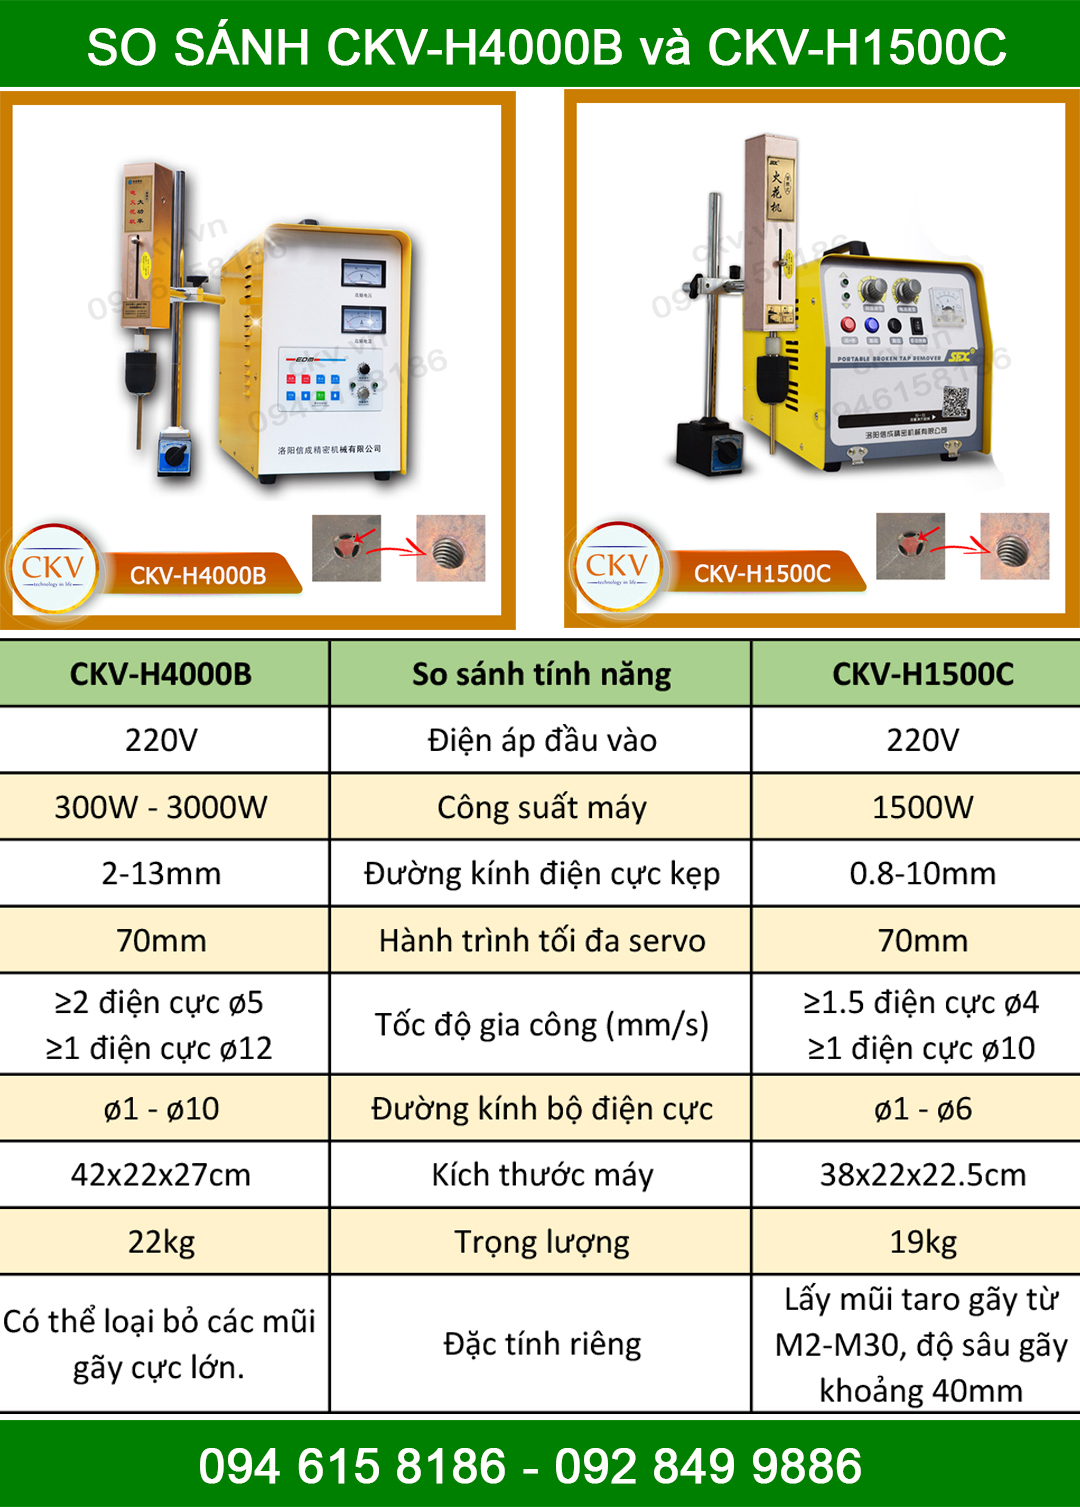 So sánh CKV-H4000B với CKV-H1500C